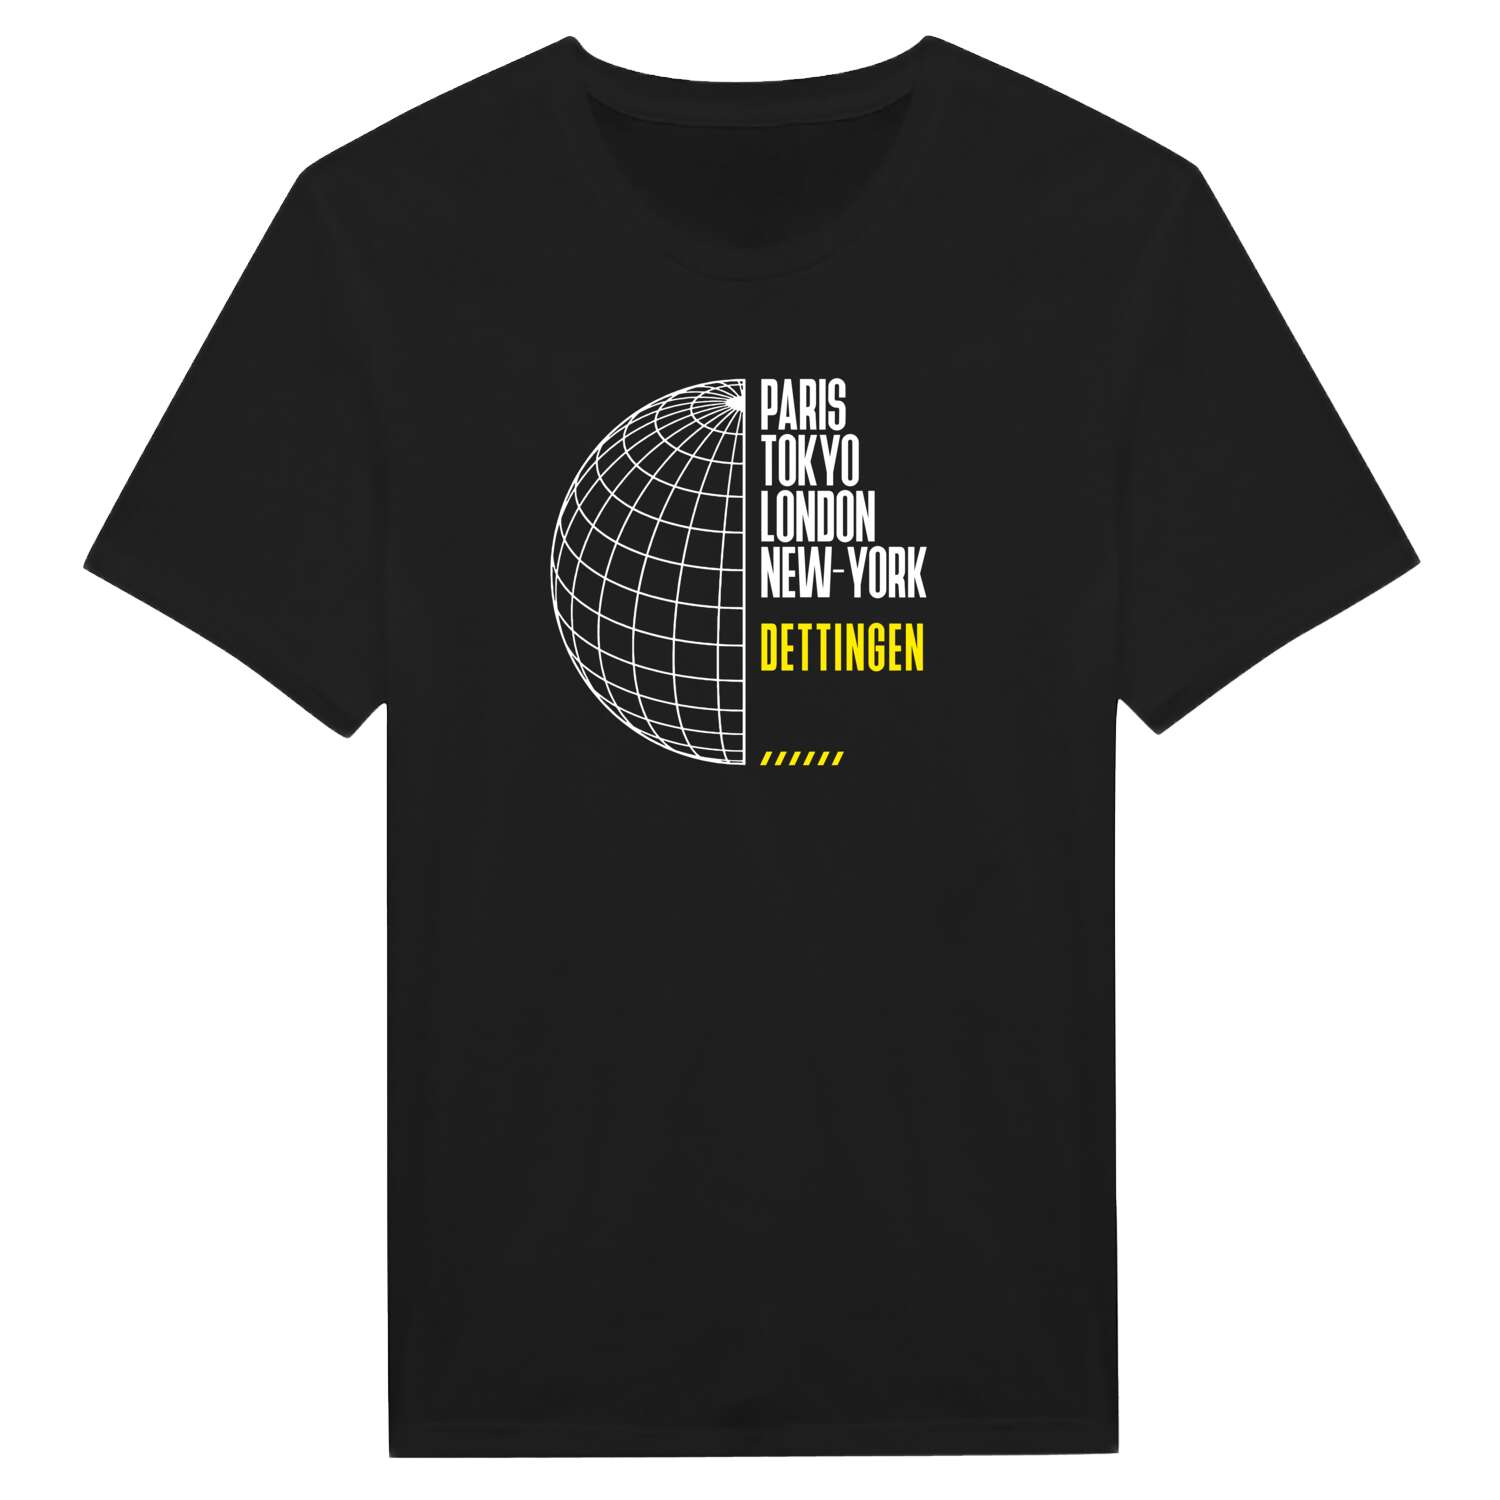 Dettingen T-Shirt »Paris Tokyo London«